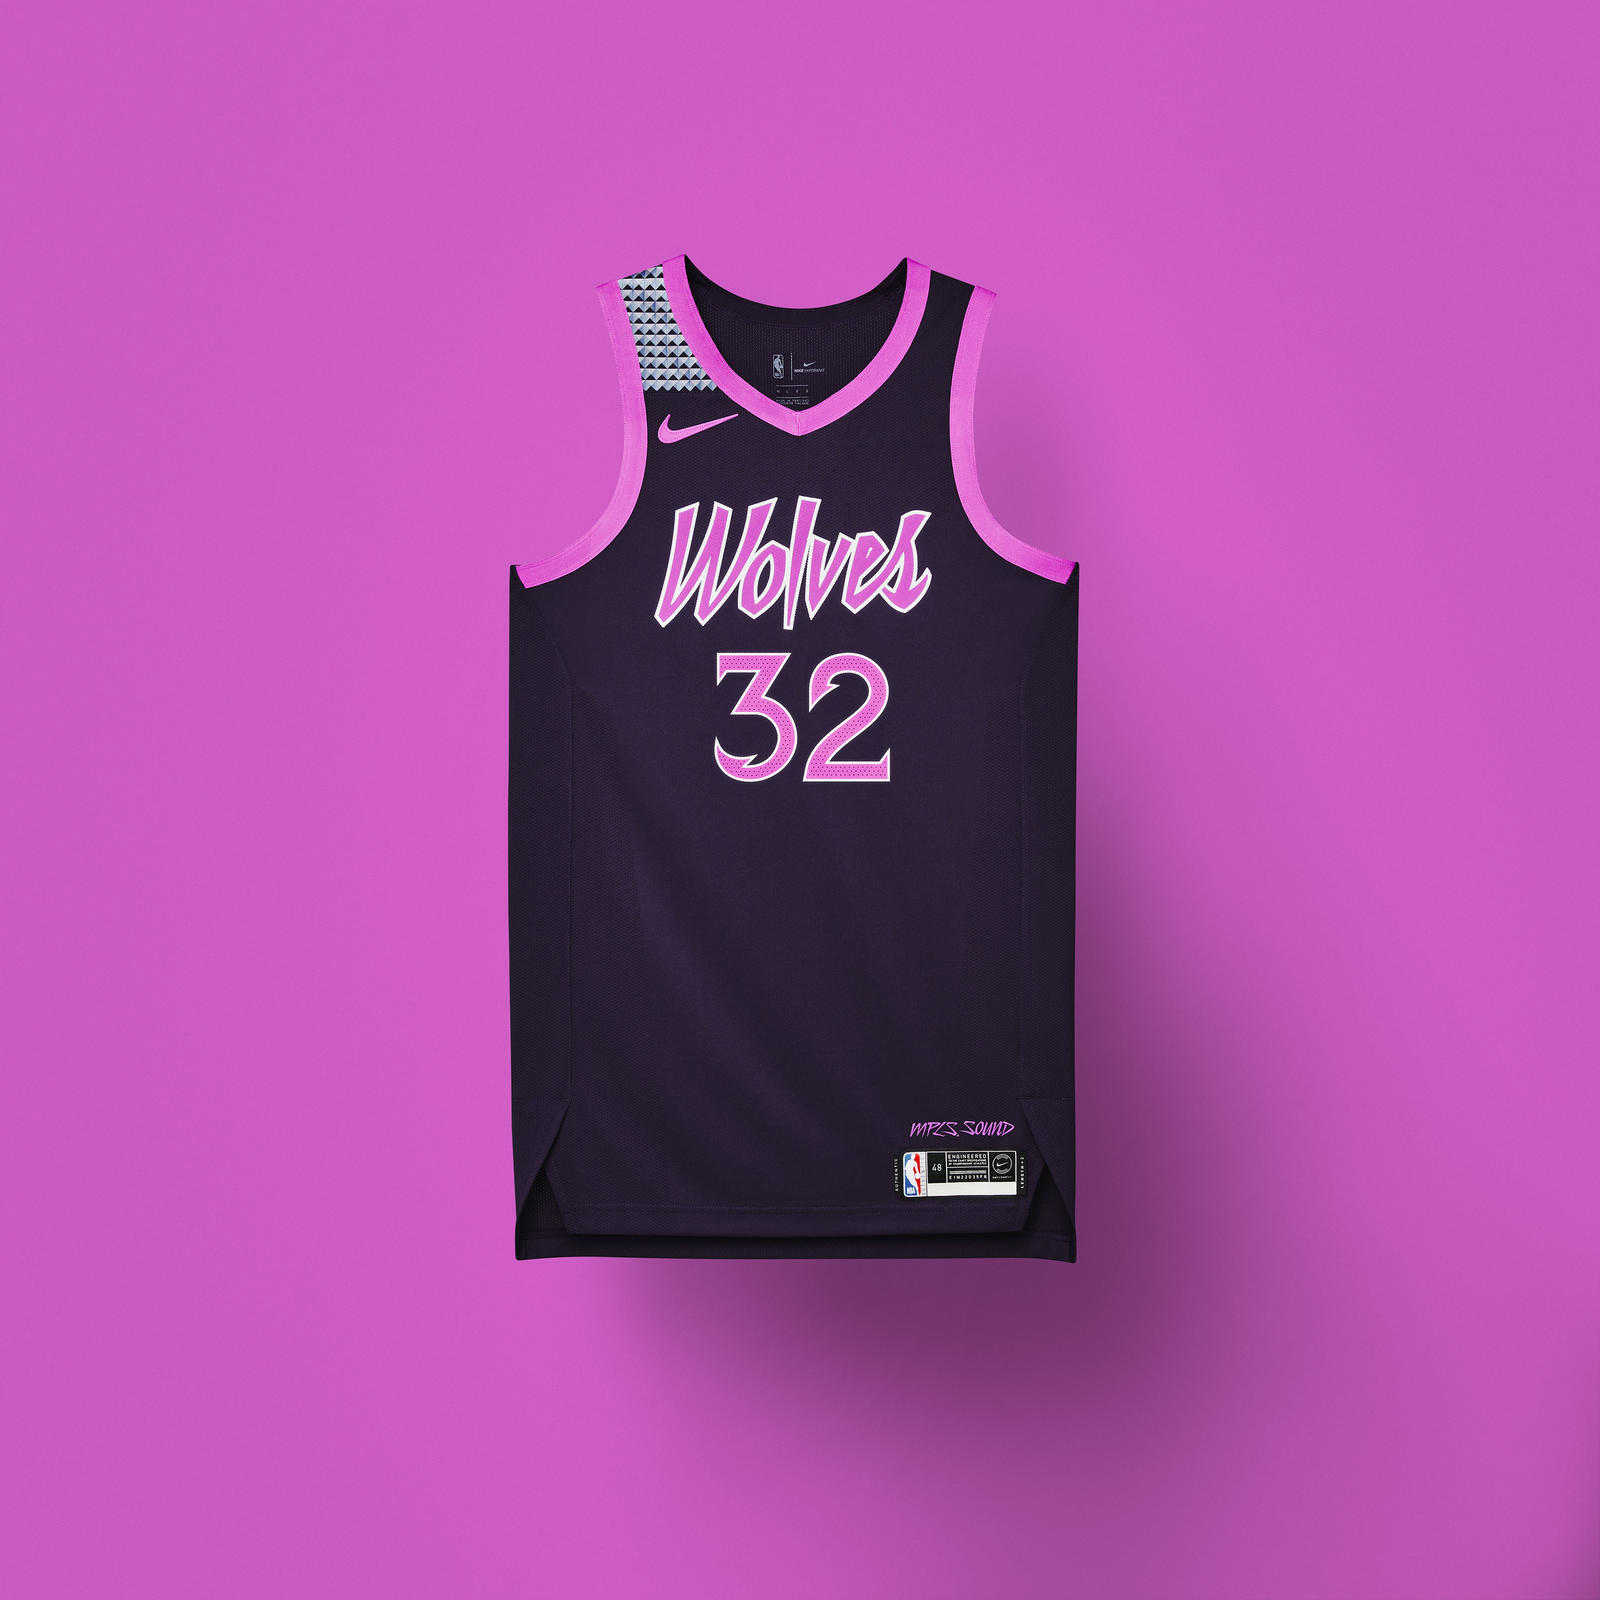 2018-19賽季NBA城市版球衣陸續登場